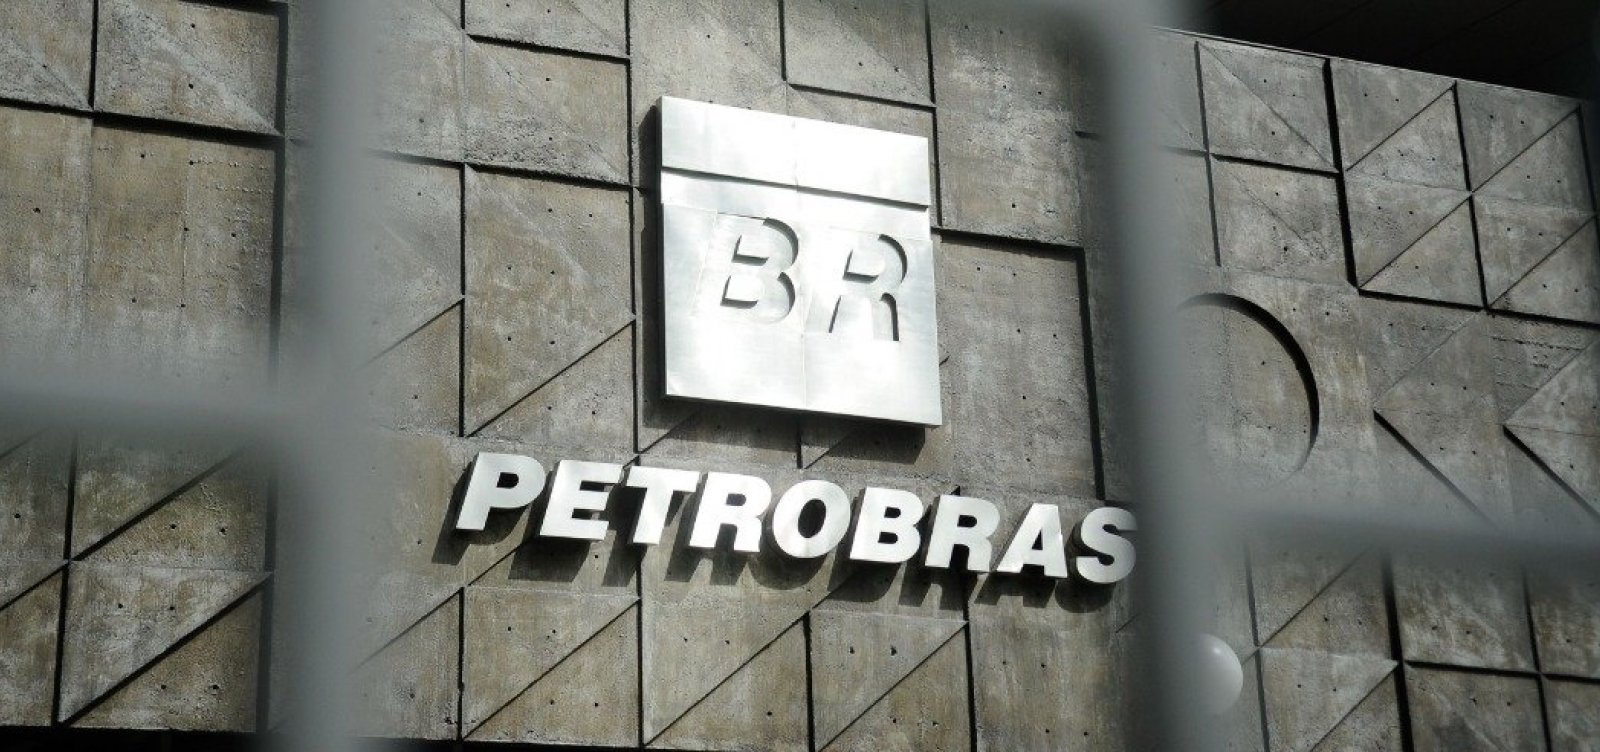 Petrobras arrenda fábricas que estavam paralisadas no Nordeste